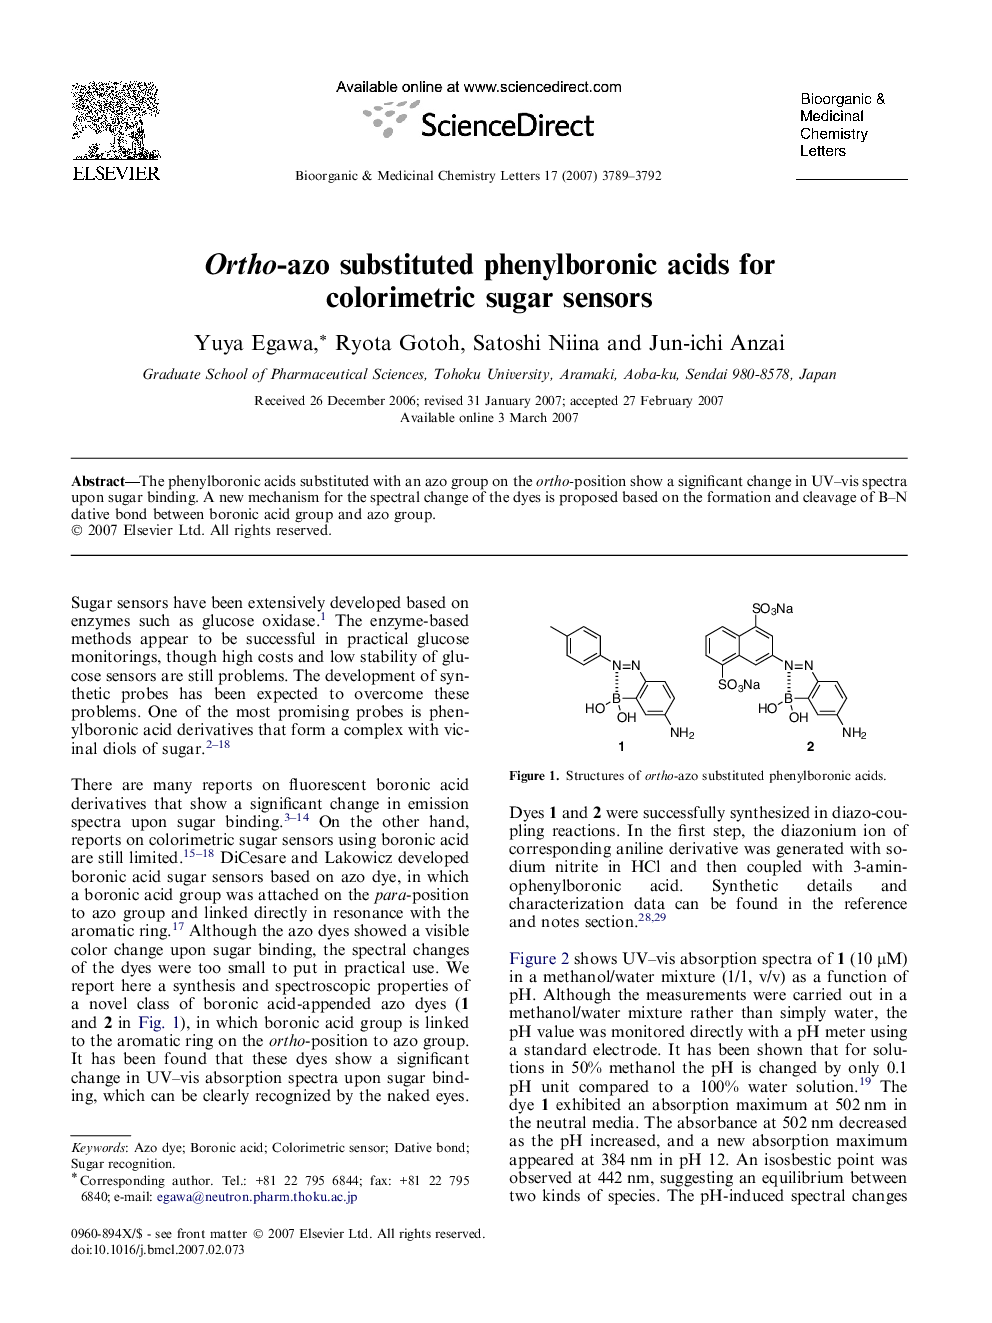 Ortho-azo substituted phenylboronic acids for colorimetric sugar sensors